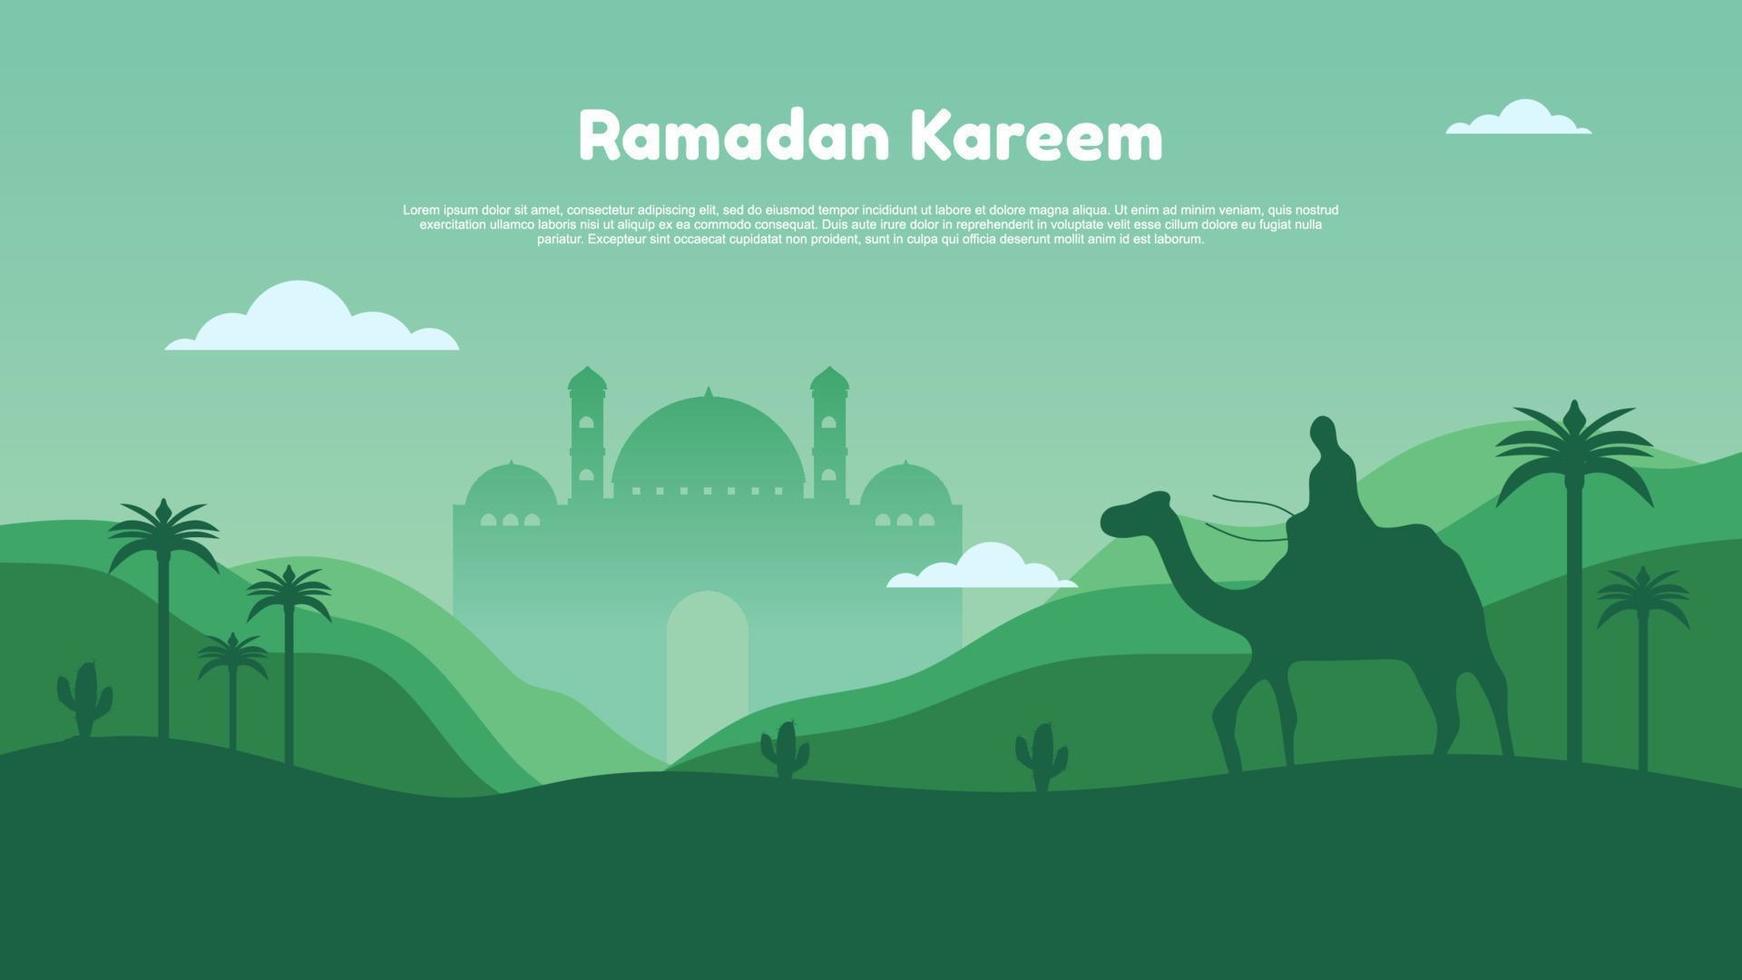 Ramadã kareem com mesquita, lua, floresta e pessoas em camelo. vetor